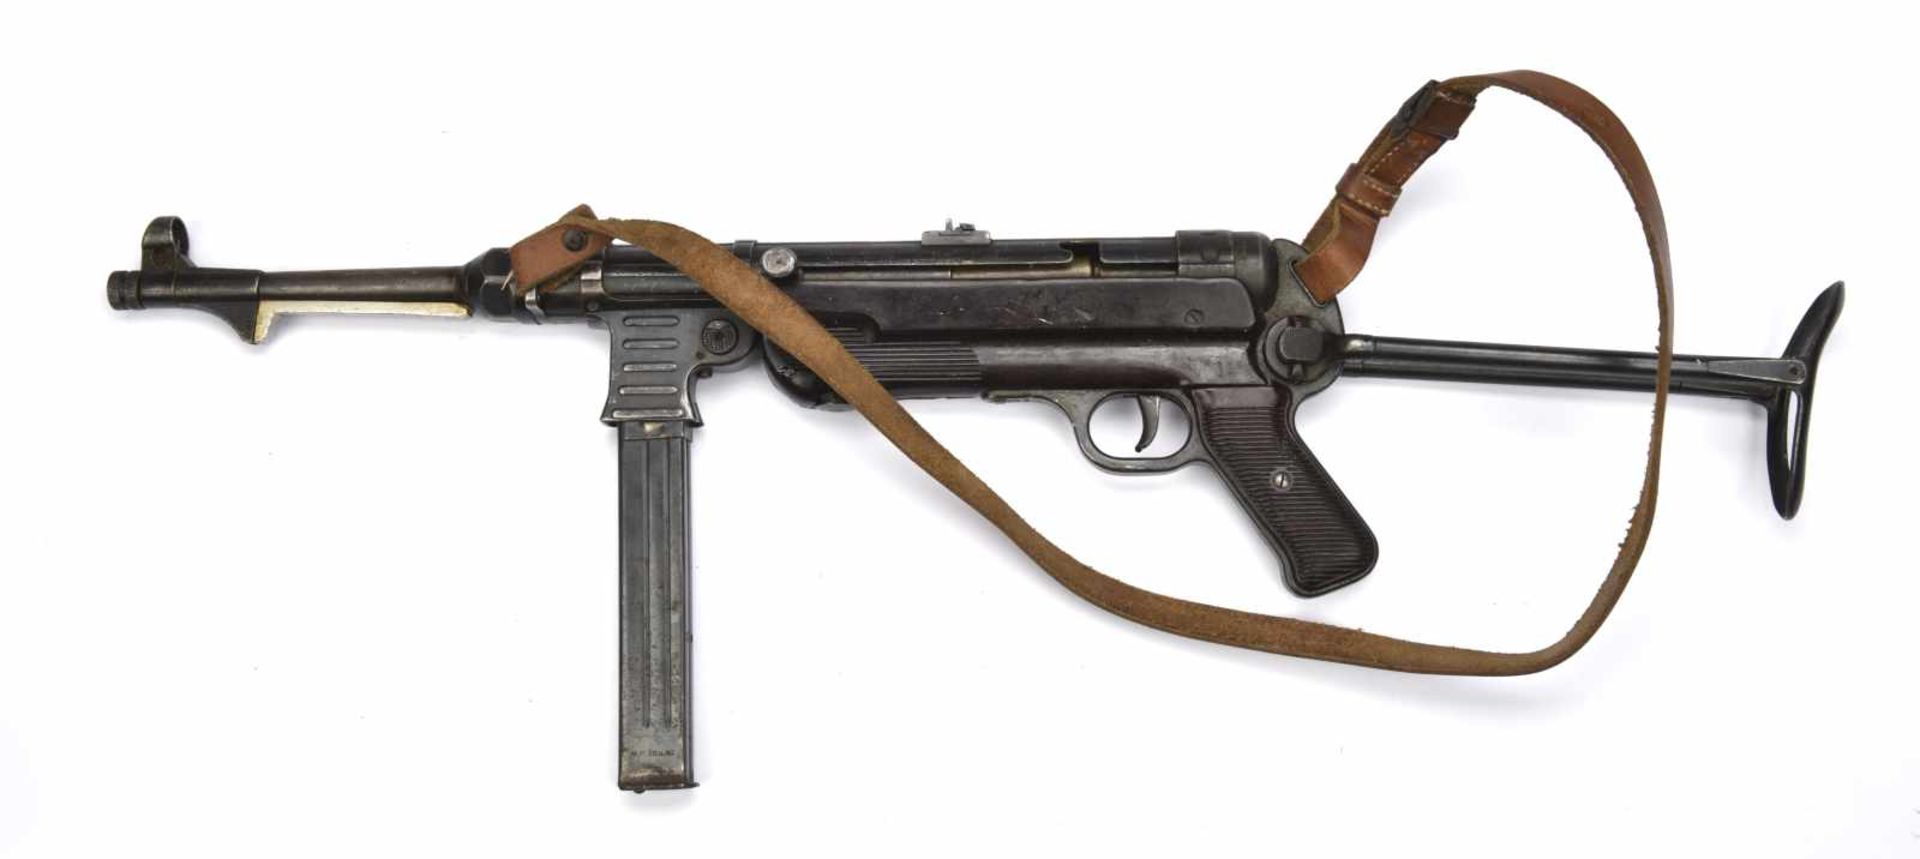 Pistolet mitrailleur MP40 Bâti et poignée en bakélite rouge, crosse pliante fonctionnelle. - Bild 3 aus 3